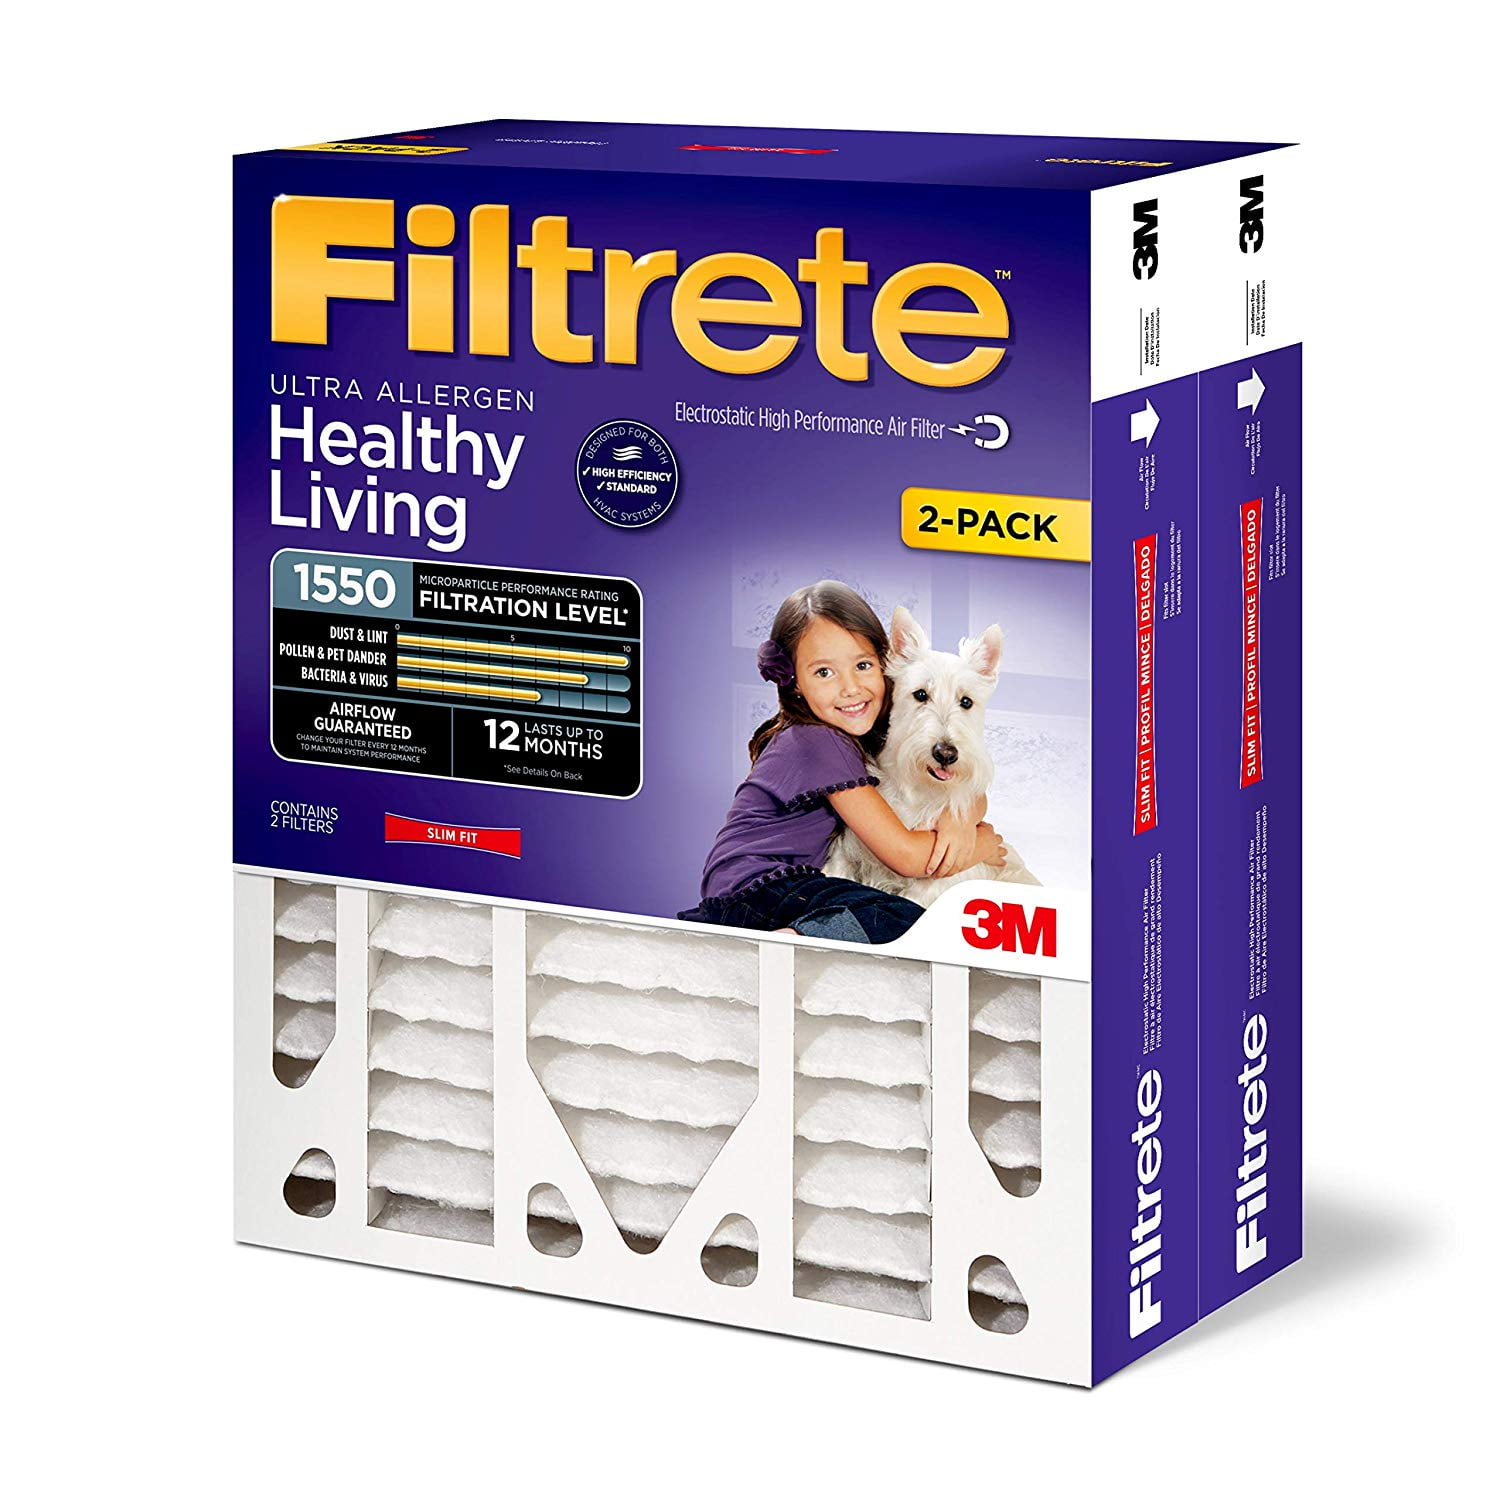 2x-filtrete-1550-allergen-reduction-filter-16x25x4-walmart